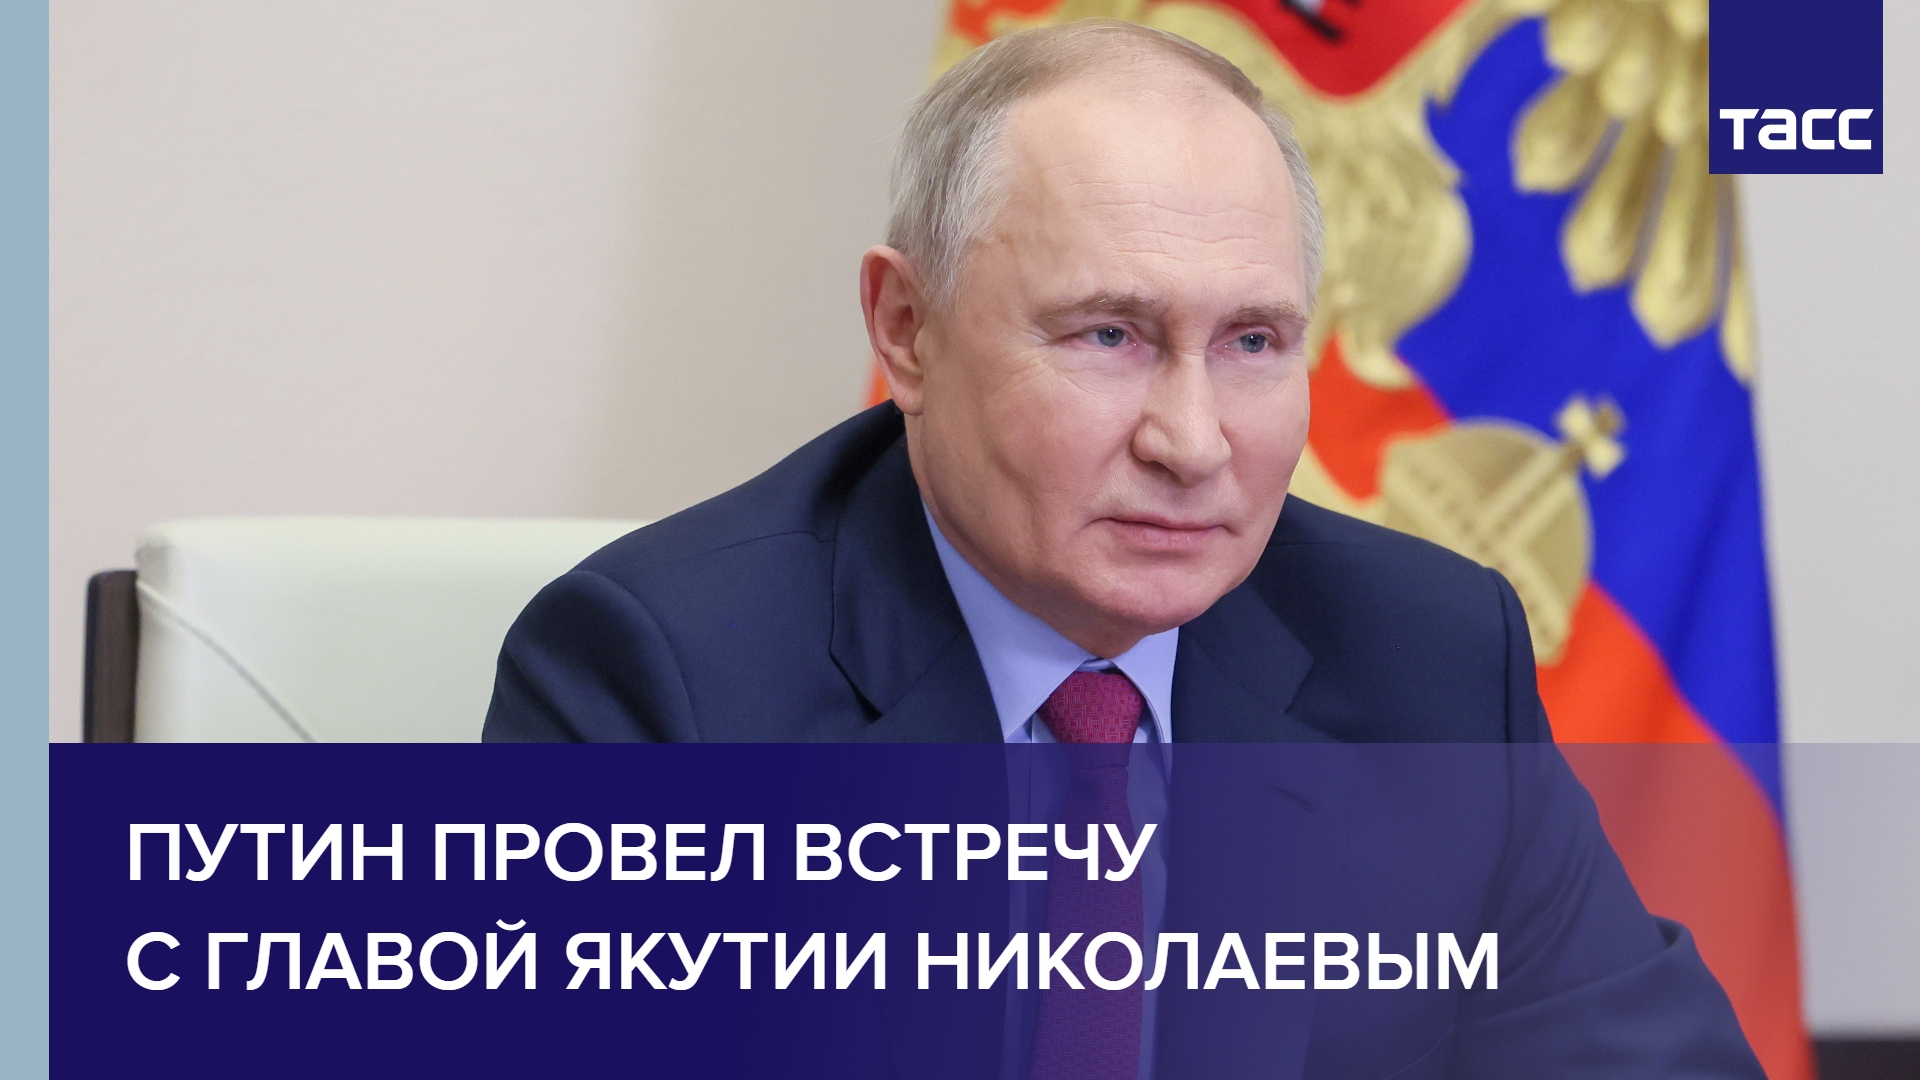 Путин провел встречу с главой Якутии Николаевым